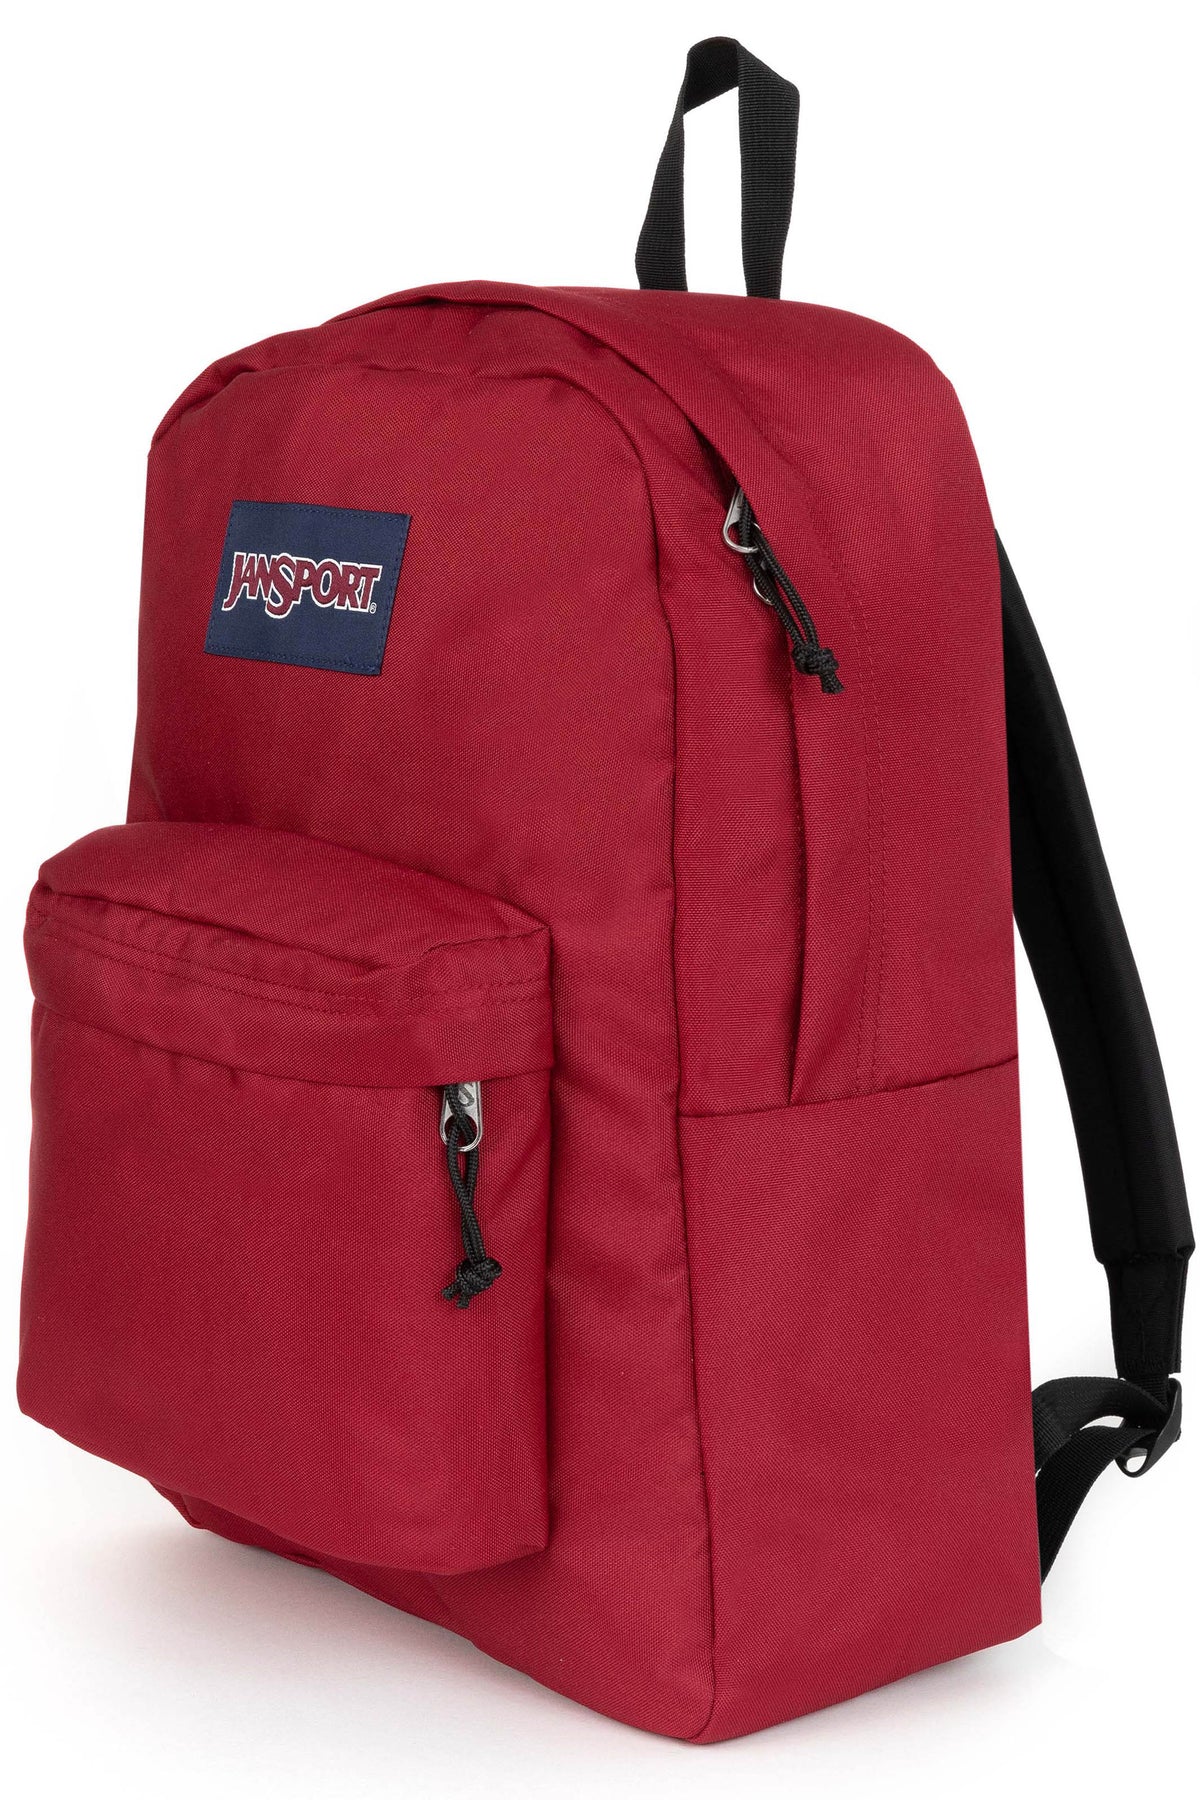 Jansport Superbreak One Backpack - Red Tape